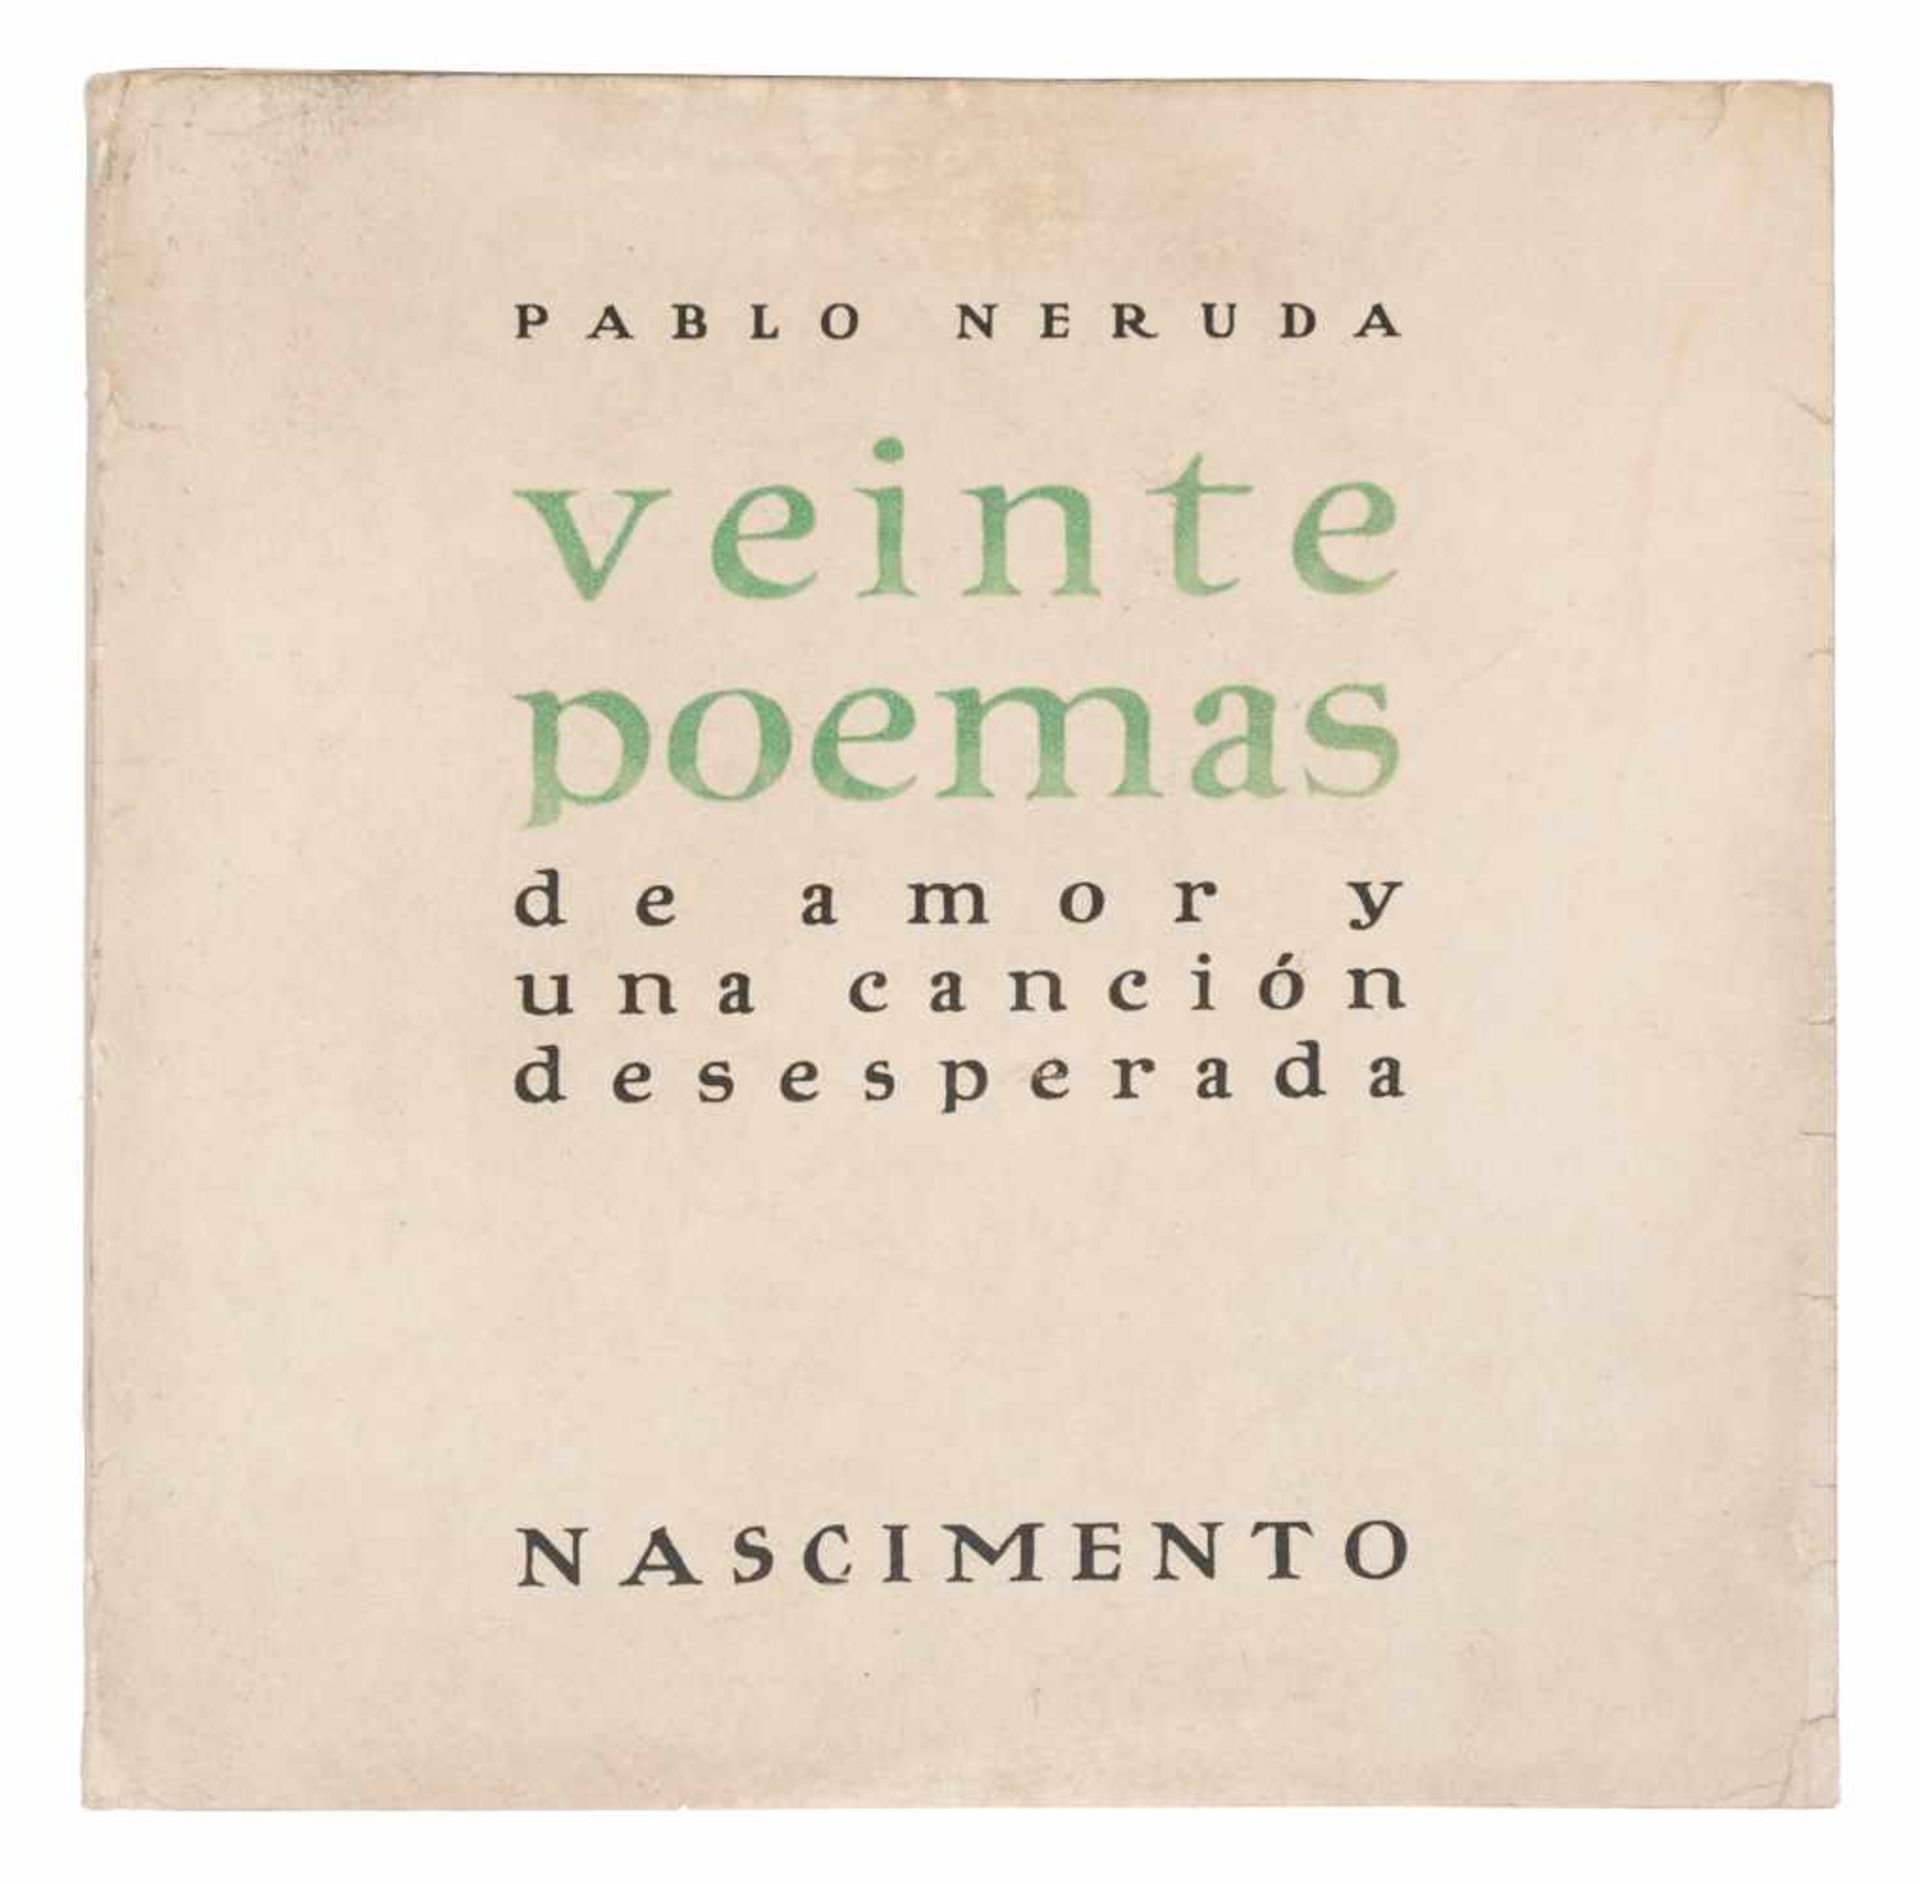 Neruda, Pablo. "Veinte poemas de amor y una canción desesperada" (Twenty love poems and a song of - Bild 2 aus 8